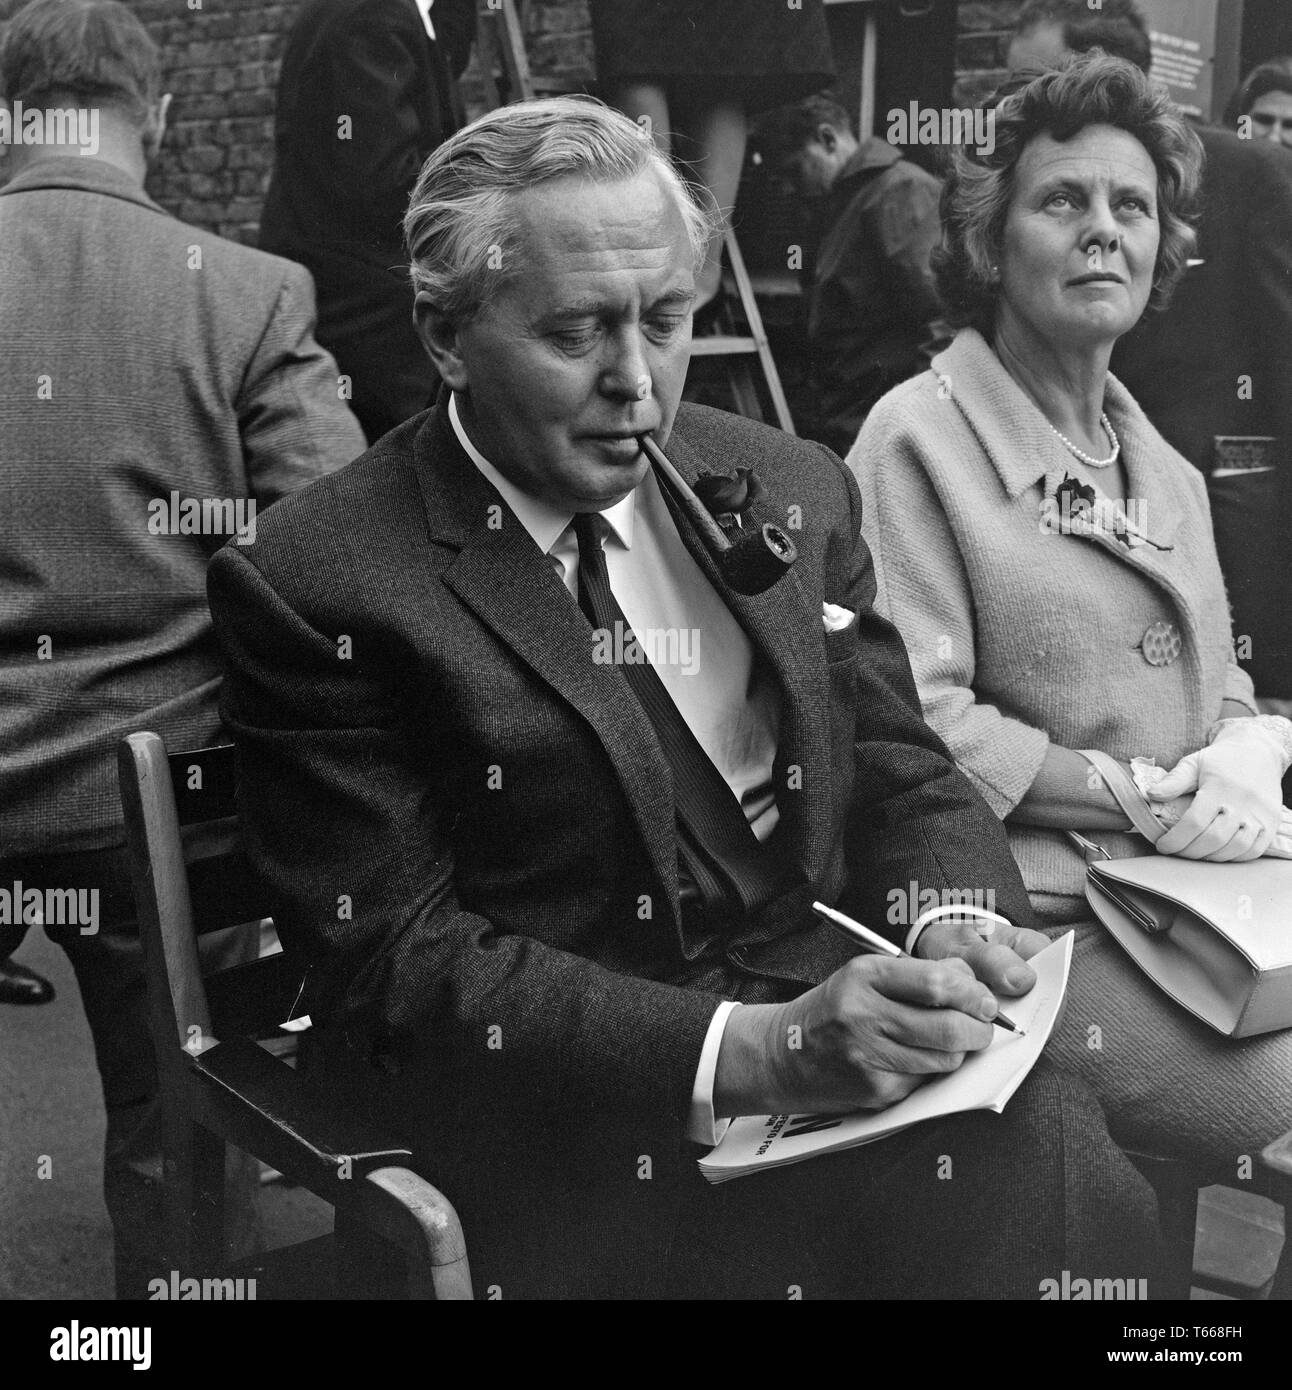 El político laborista británico y, finalmente, el Primer Ministro Harold Wilson, campaña en Lewisham, en el sur de Londres, durante la elección general británica de 1964. Su esposa María sentada junto a él. Foto de stock